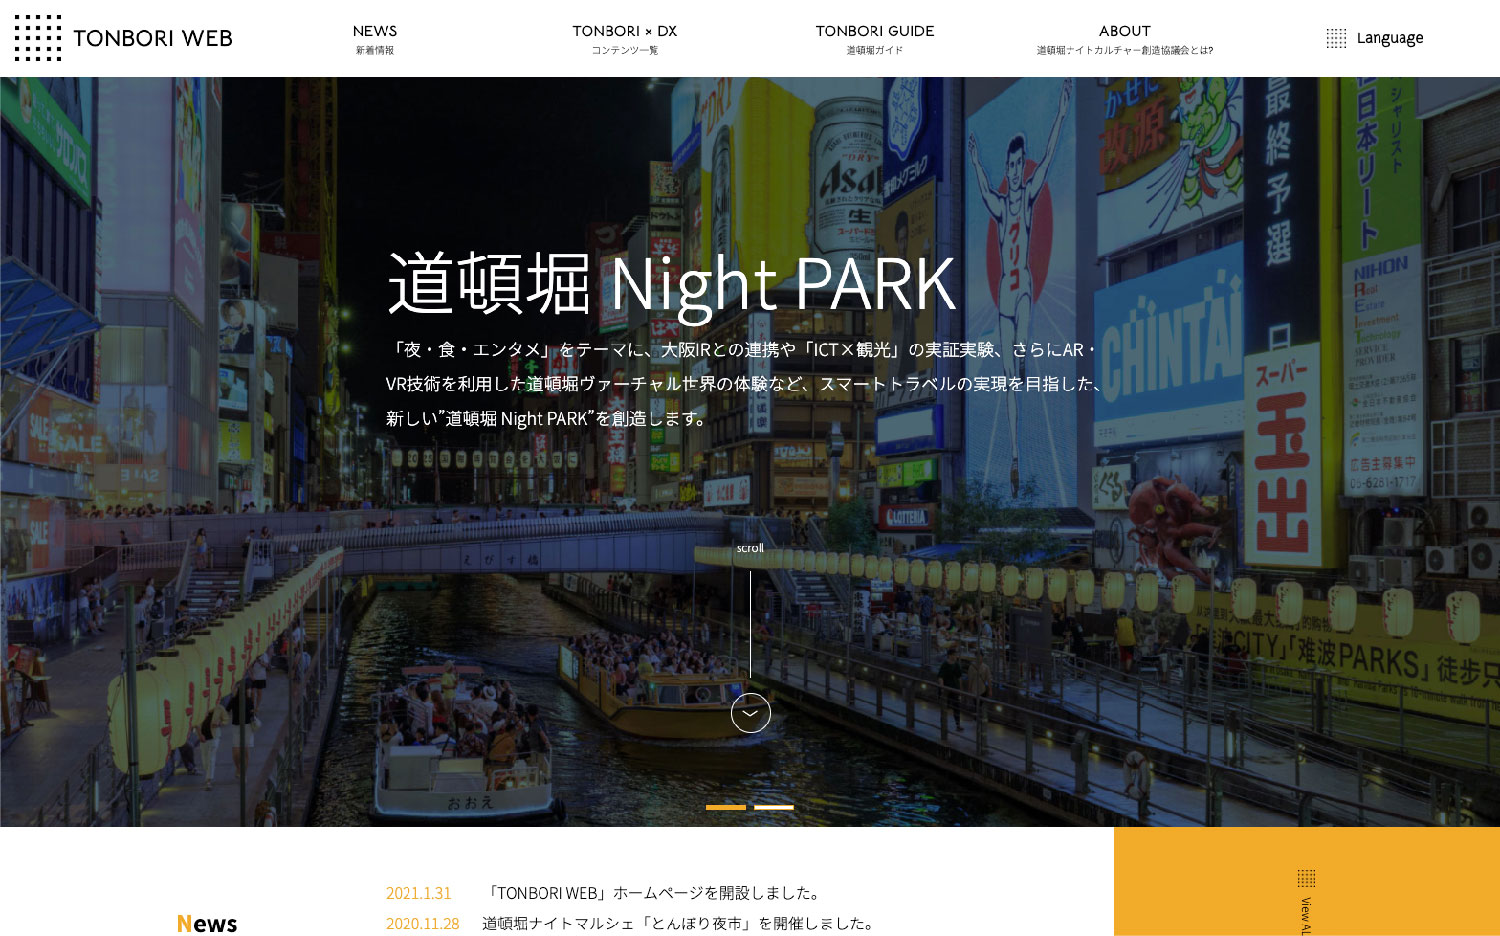 "TONBORI WEB" Homepage Launched